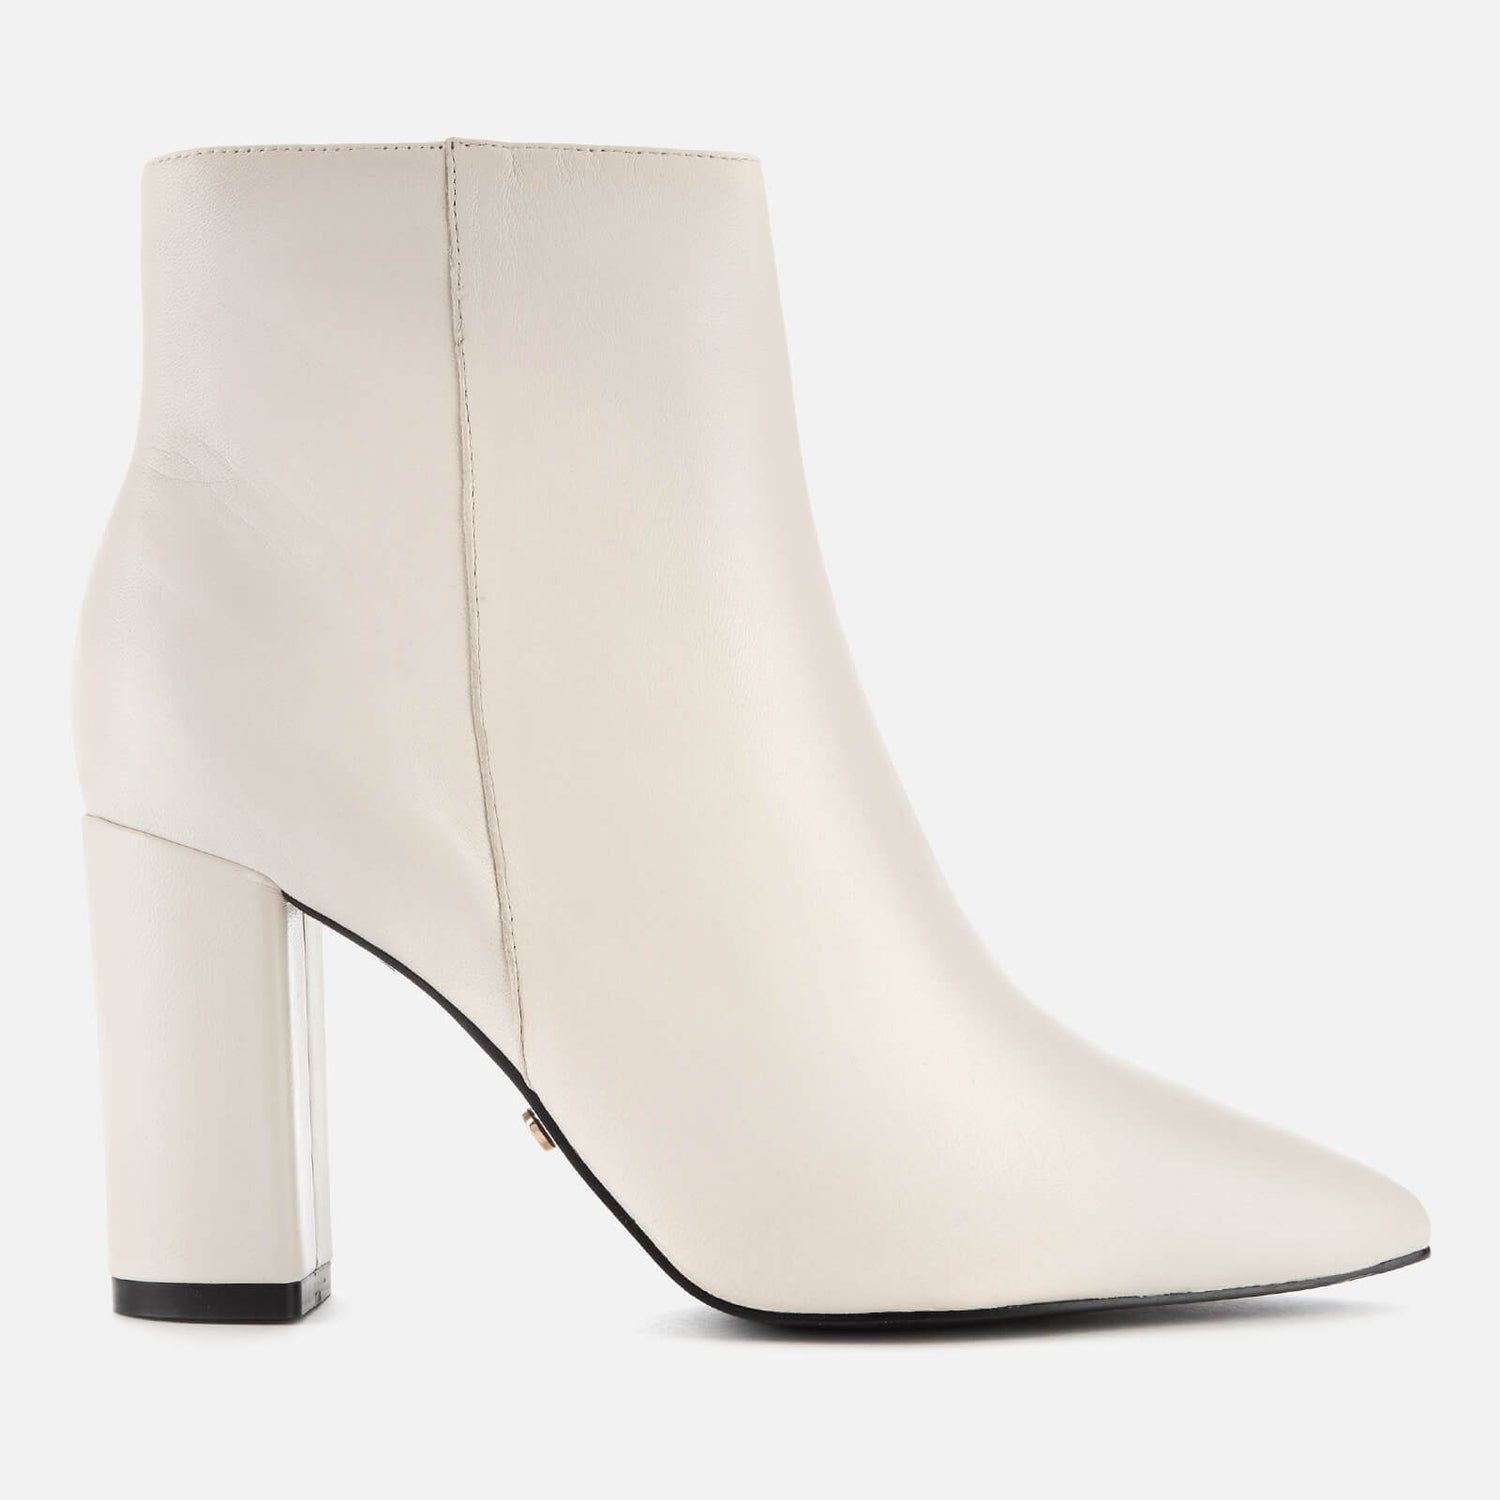 Dune Women's Otilia Leather Heeled Ankle Boots - White | TheHut.com